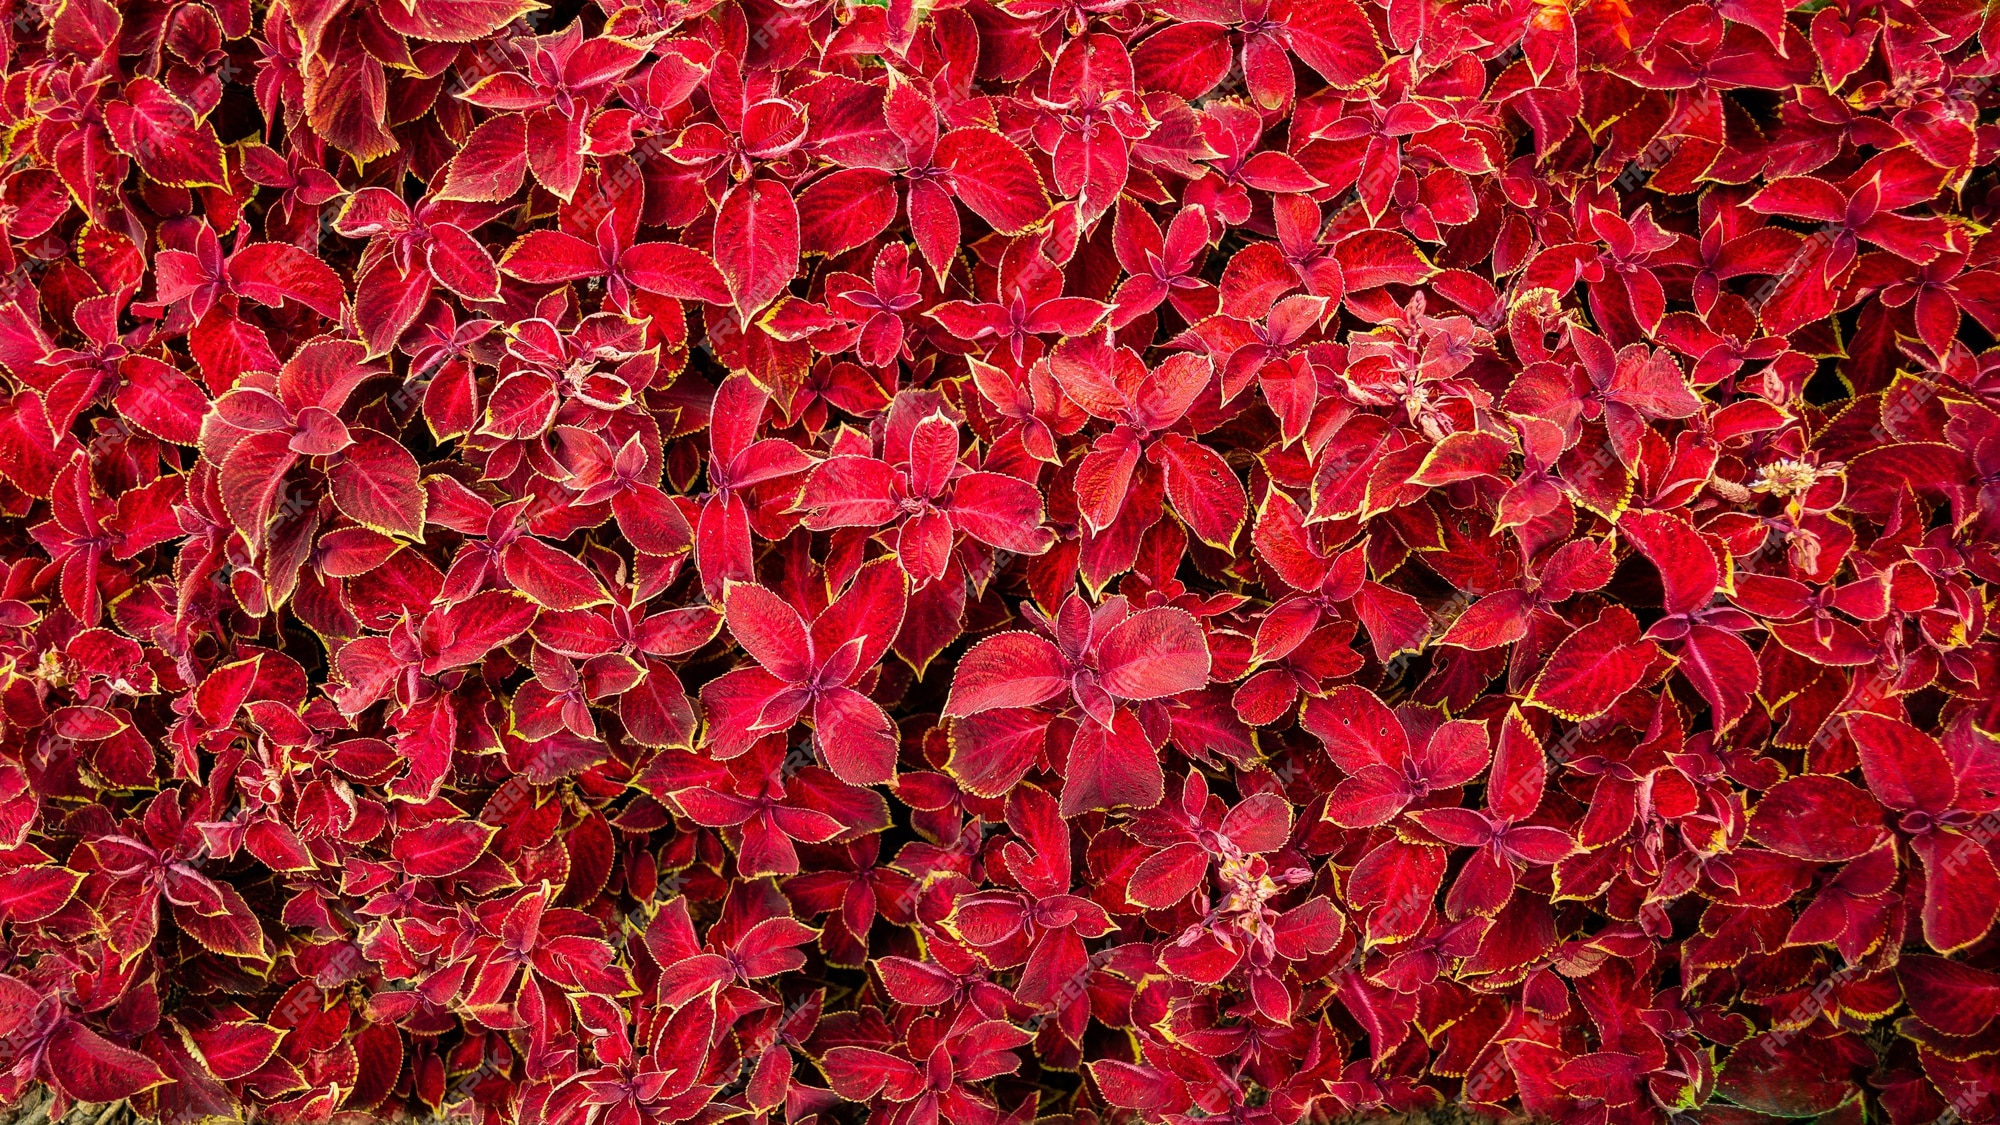 Lindas plantas com folhas vermelhas brilhantes | Foto Grátis